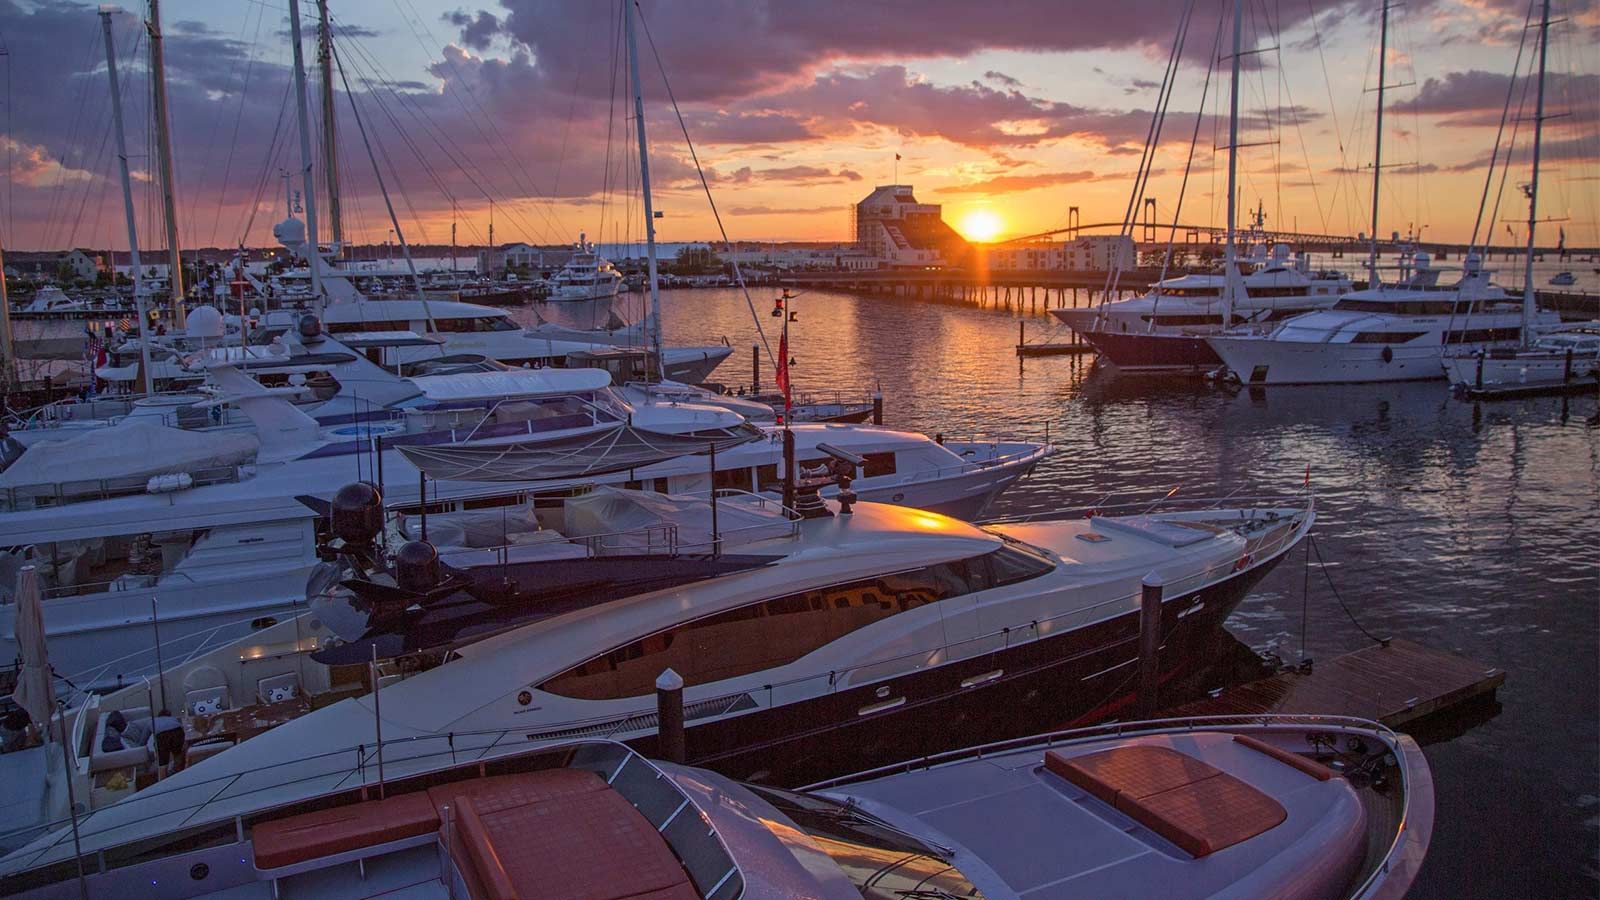 Newport Charter Yacht Show 2018